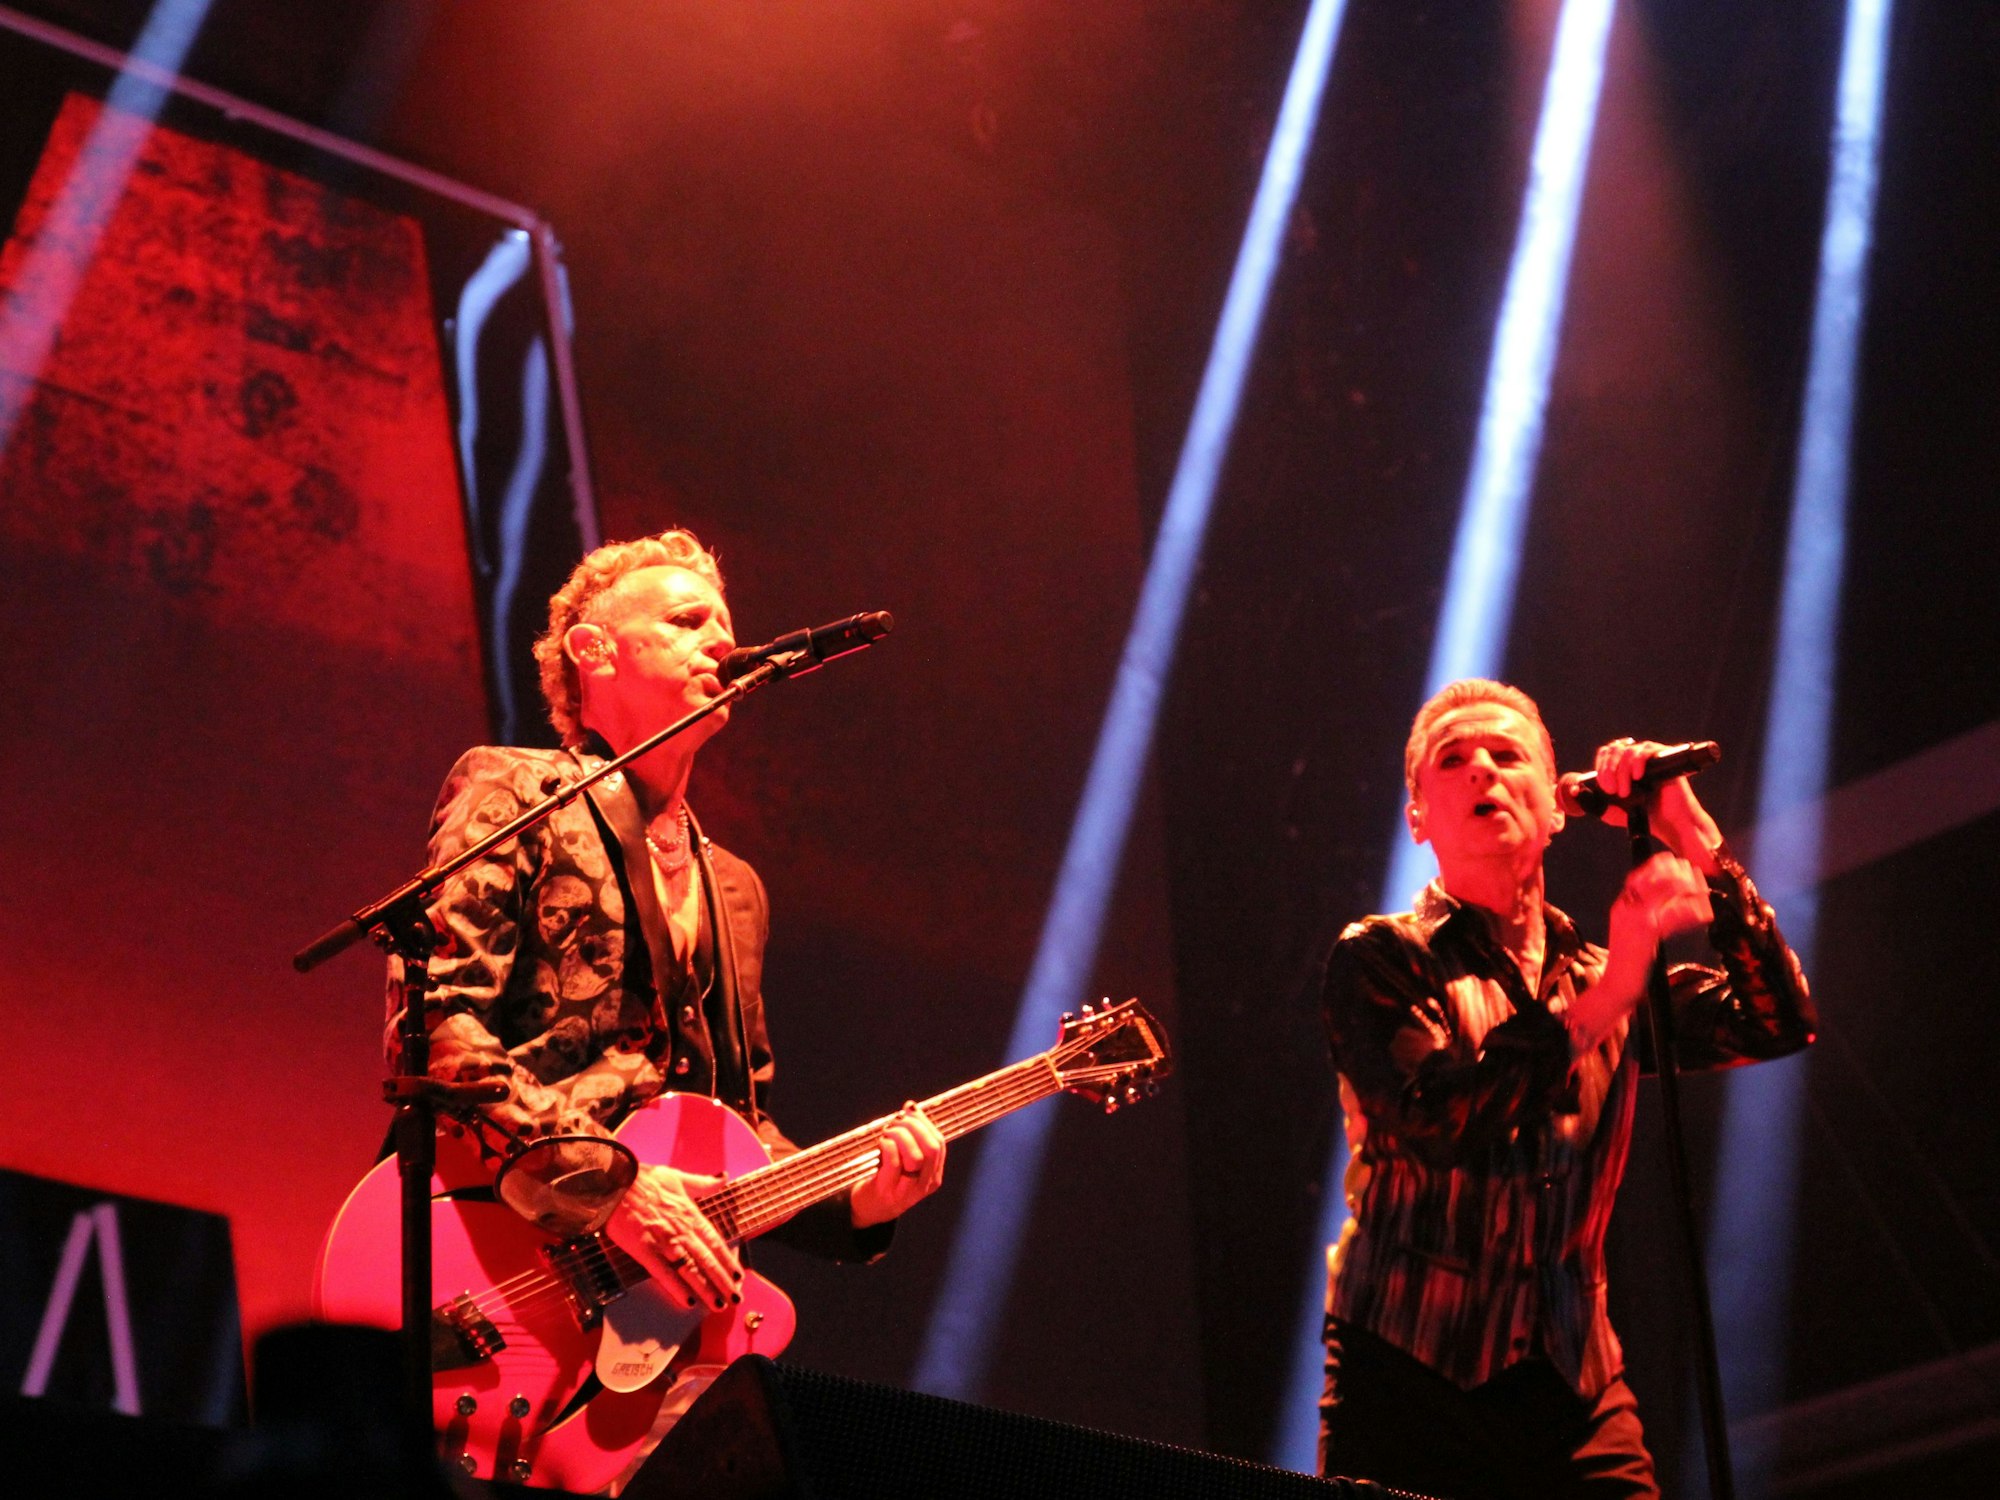 Depeche Mode bei ihrem Konzert in Düsseldorf.